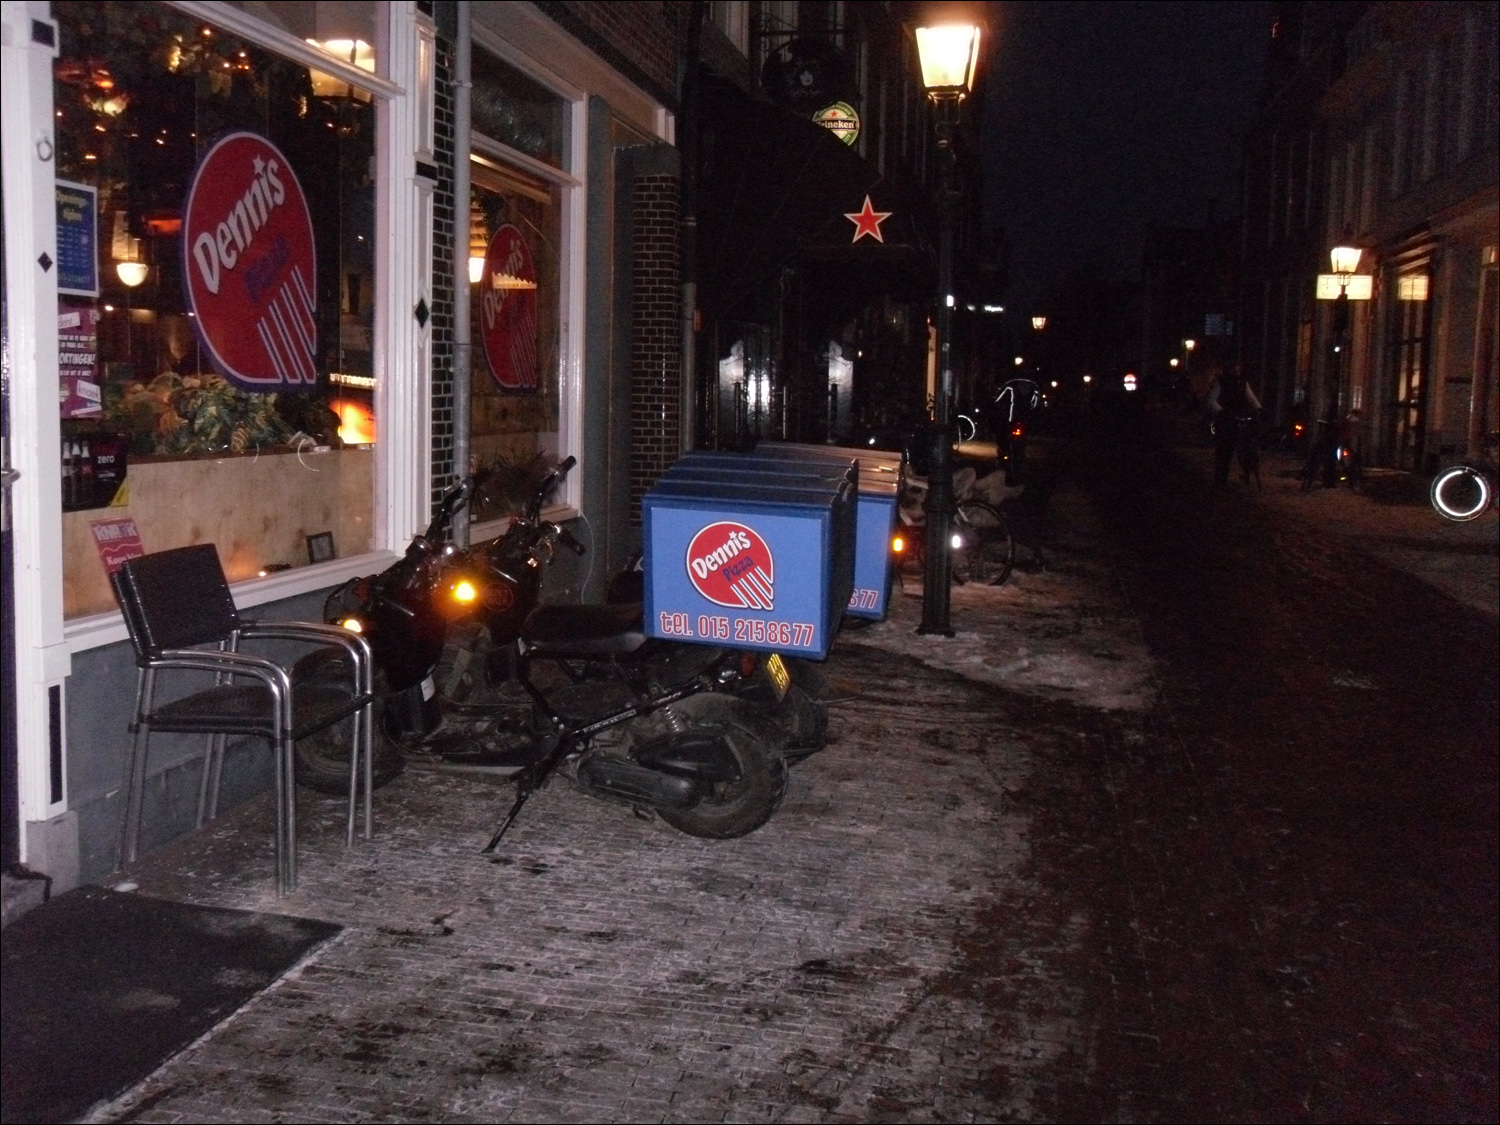 Delft-pizza delivery motorbikes